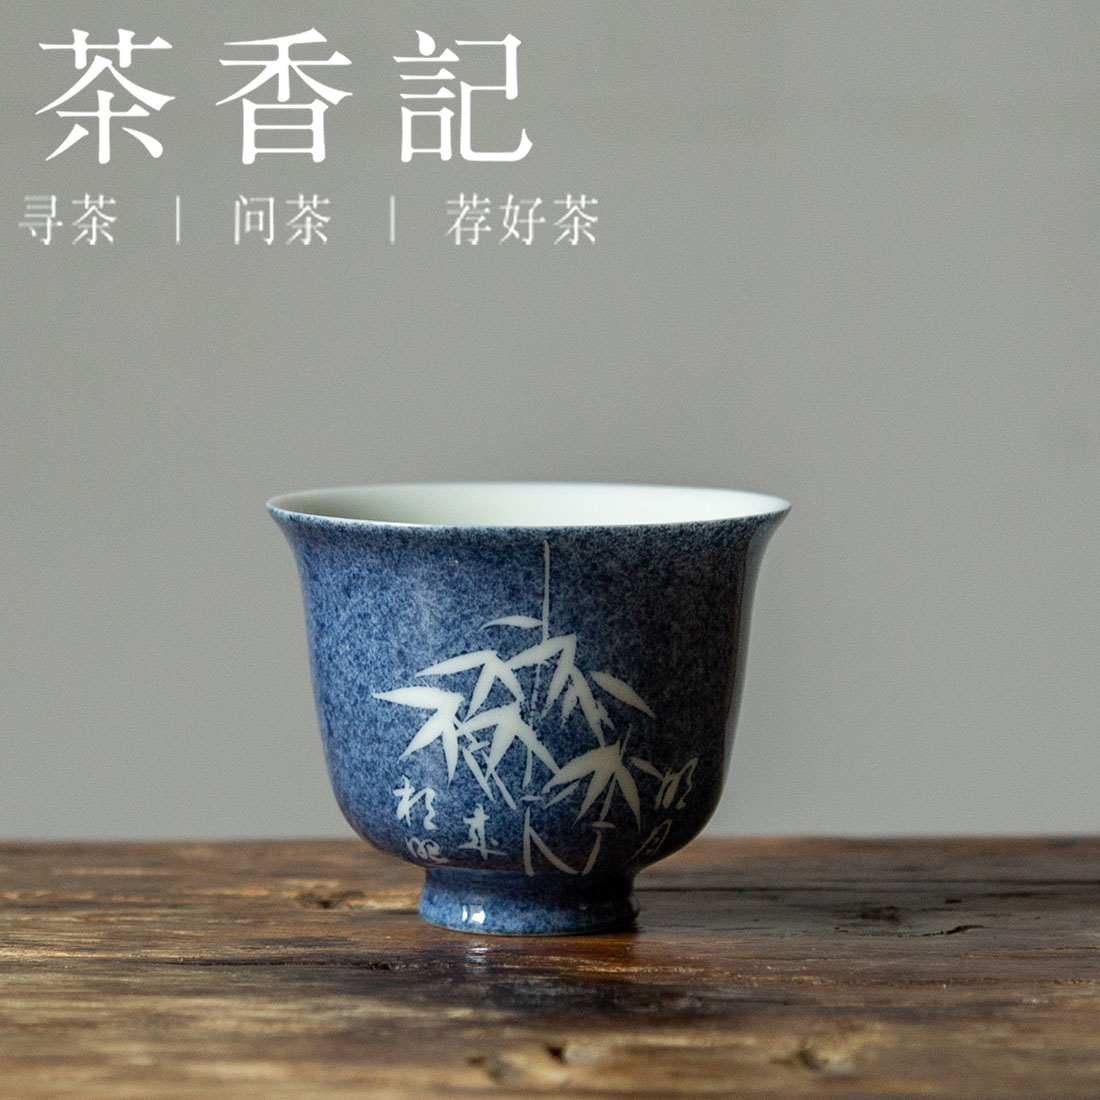 茶香记 洒蓝 文竹品杯 蓝白相衬 古典风韵 小巧端庄  陶瓷 茶杯